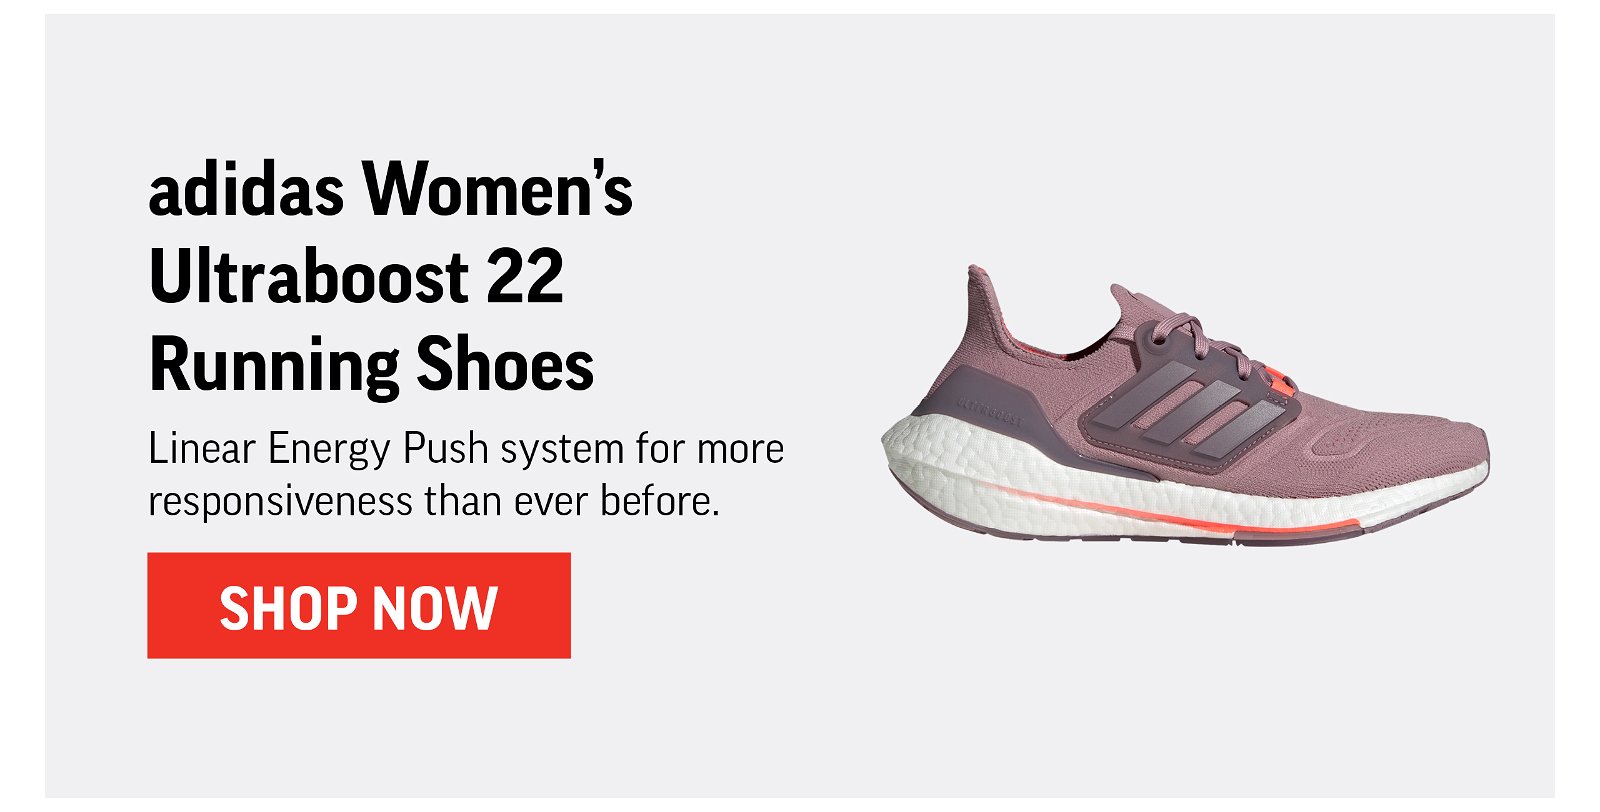 adidas Women's Ultraboost 22 IWD Running Shoes